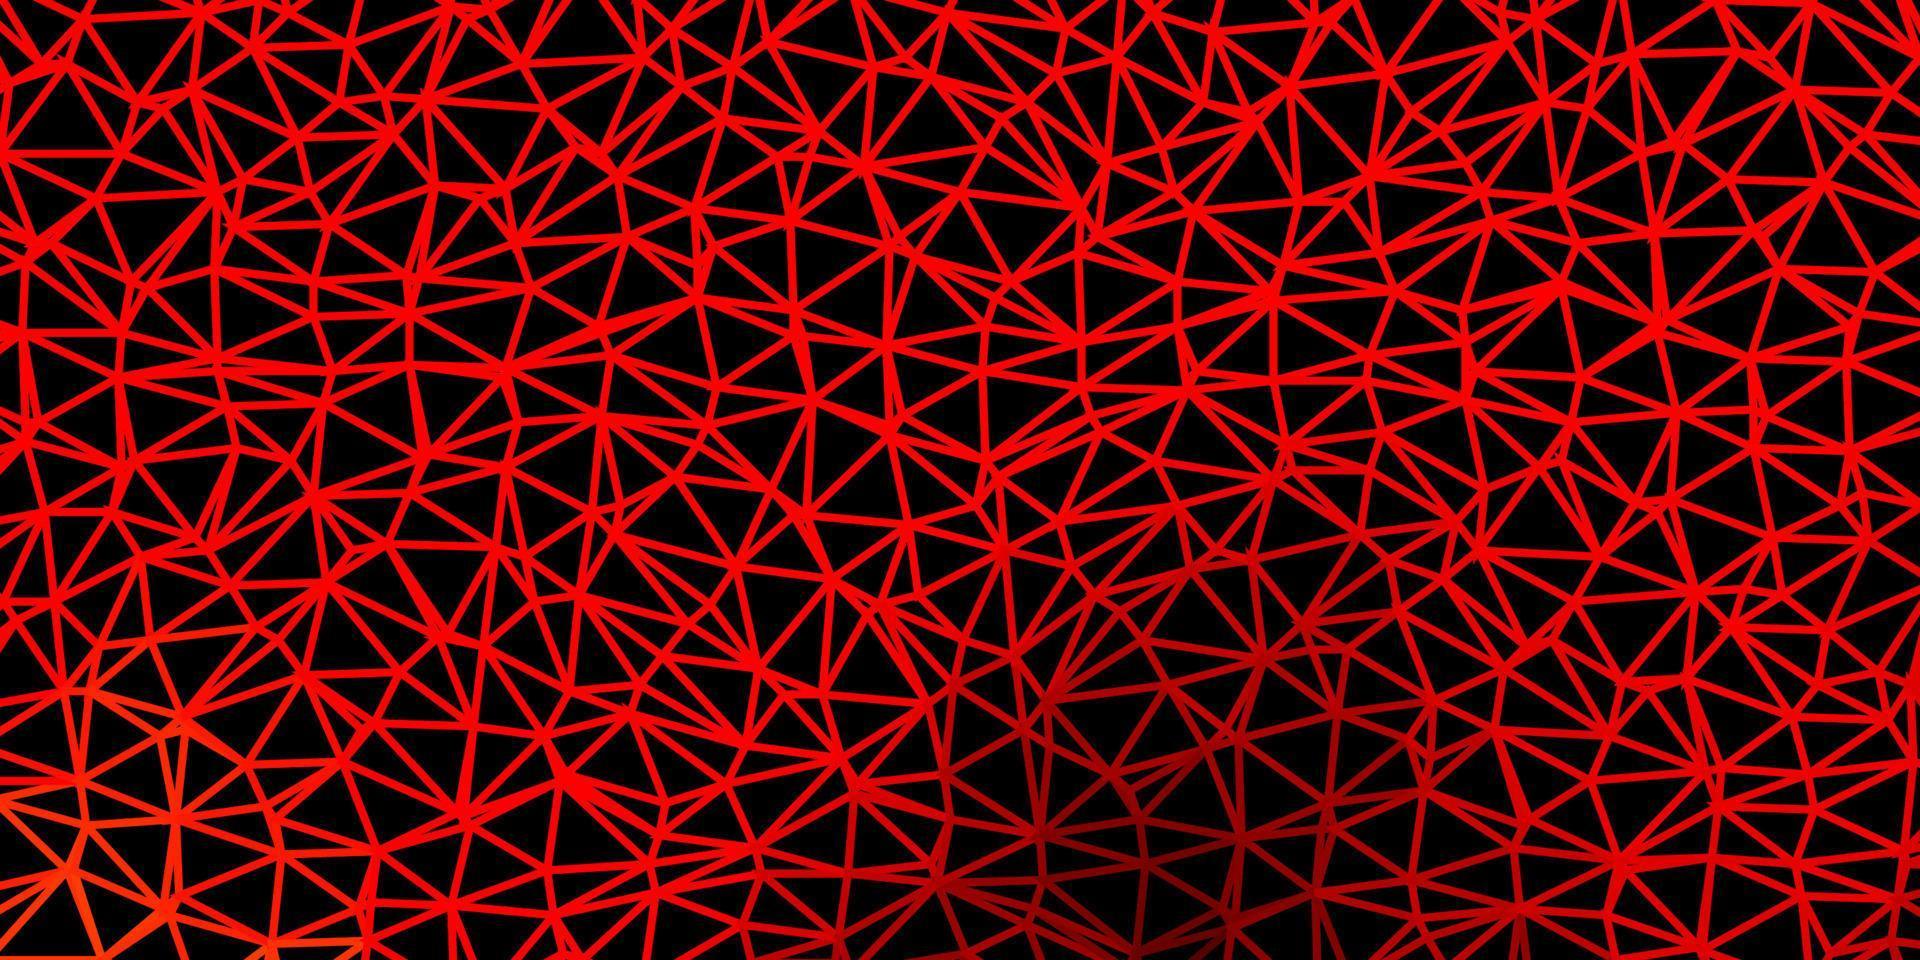 mörk röd, gul vektor triangel mosaik bakgrund.